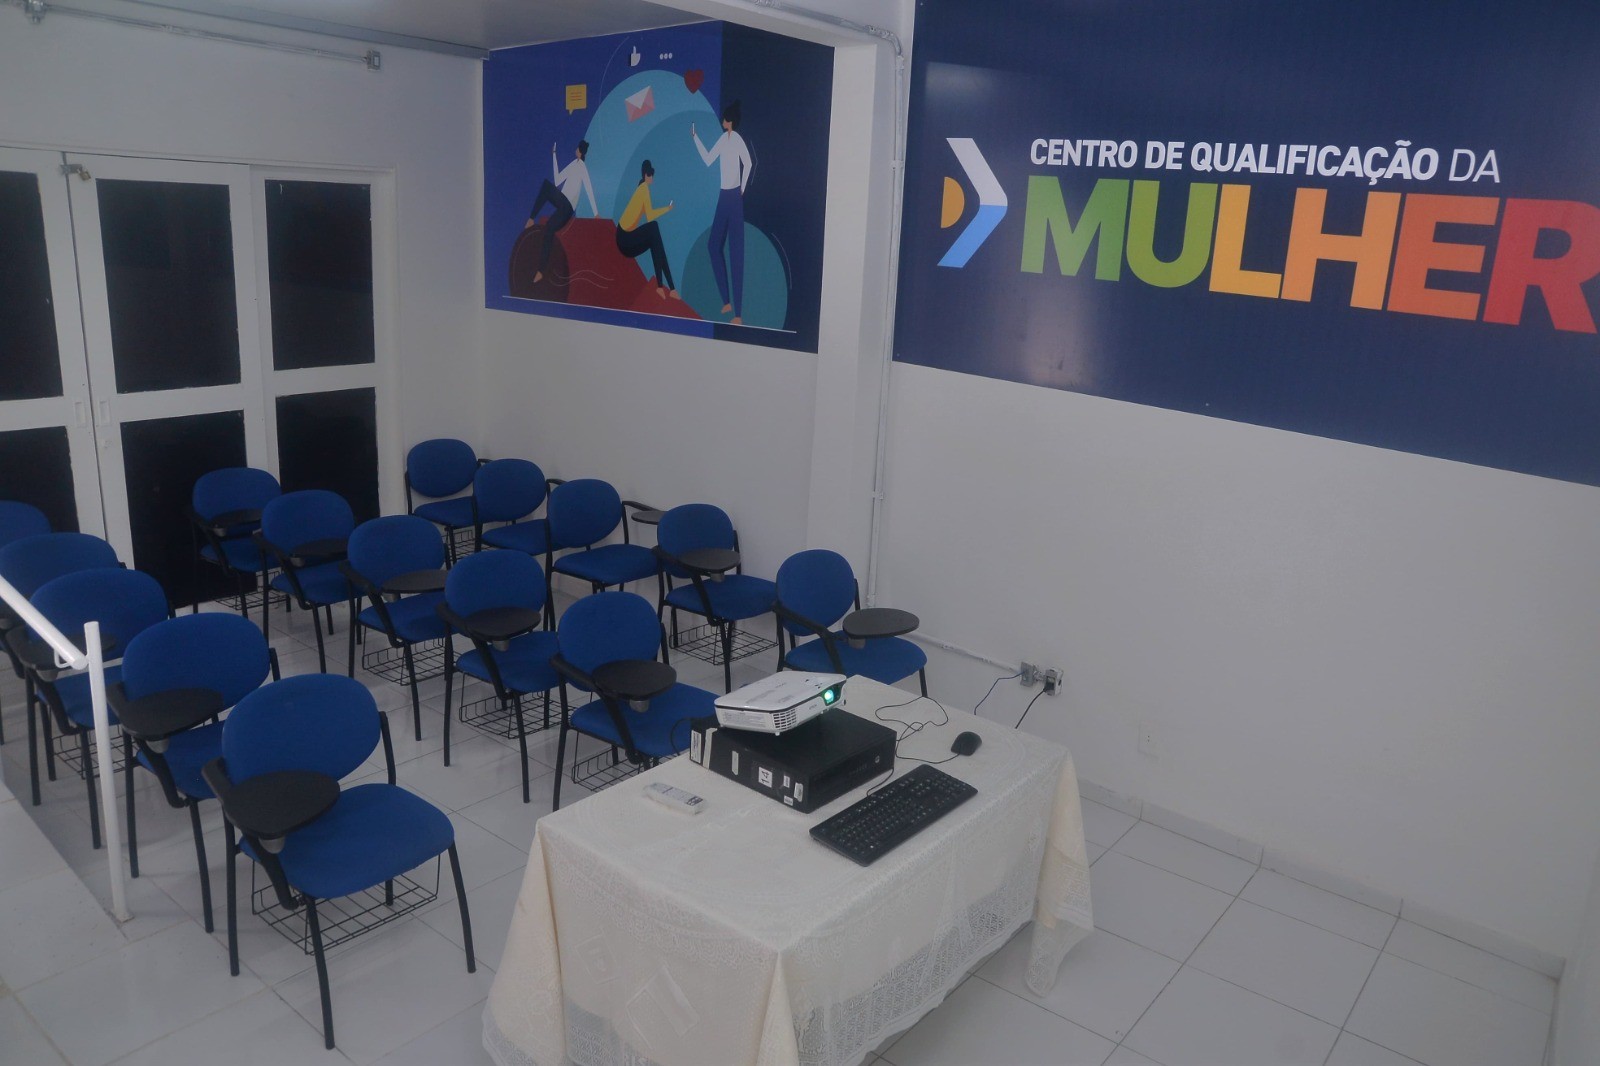 Centro de Qualificação da Mulher em Caruaru está com inscrições abertas para oficinas gratuitas